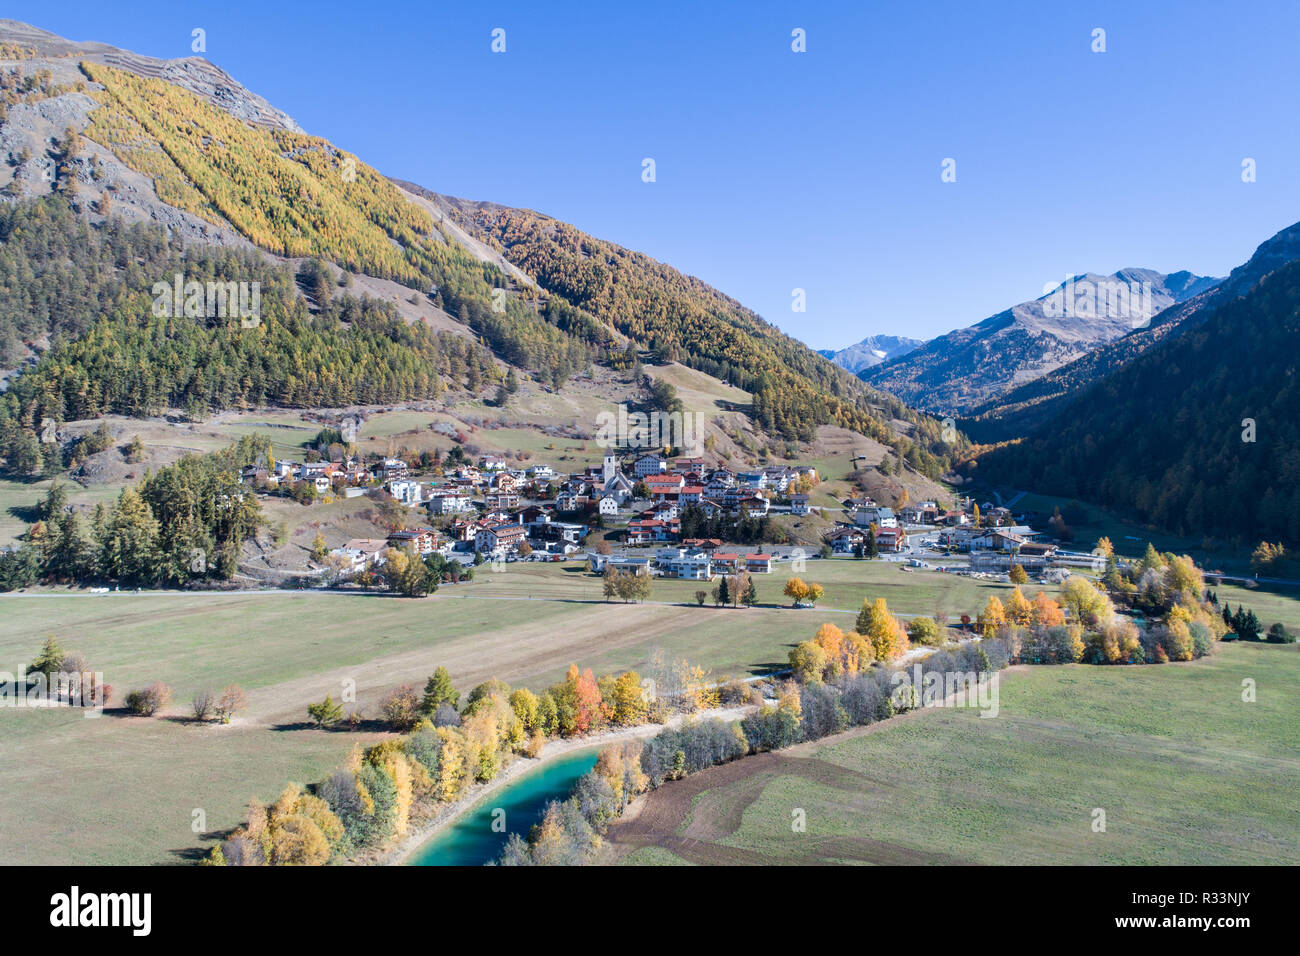 Villaggio di Curon Venosta. Trentino Alto Adige. Foto aerea Foto Stock